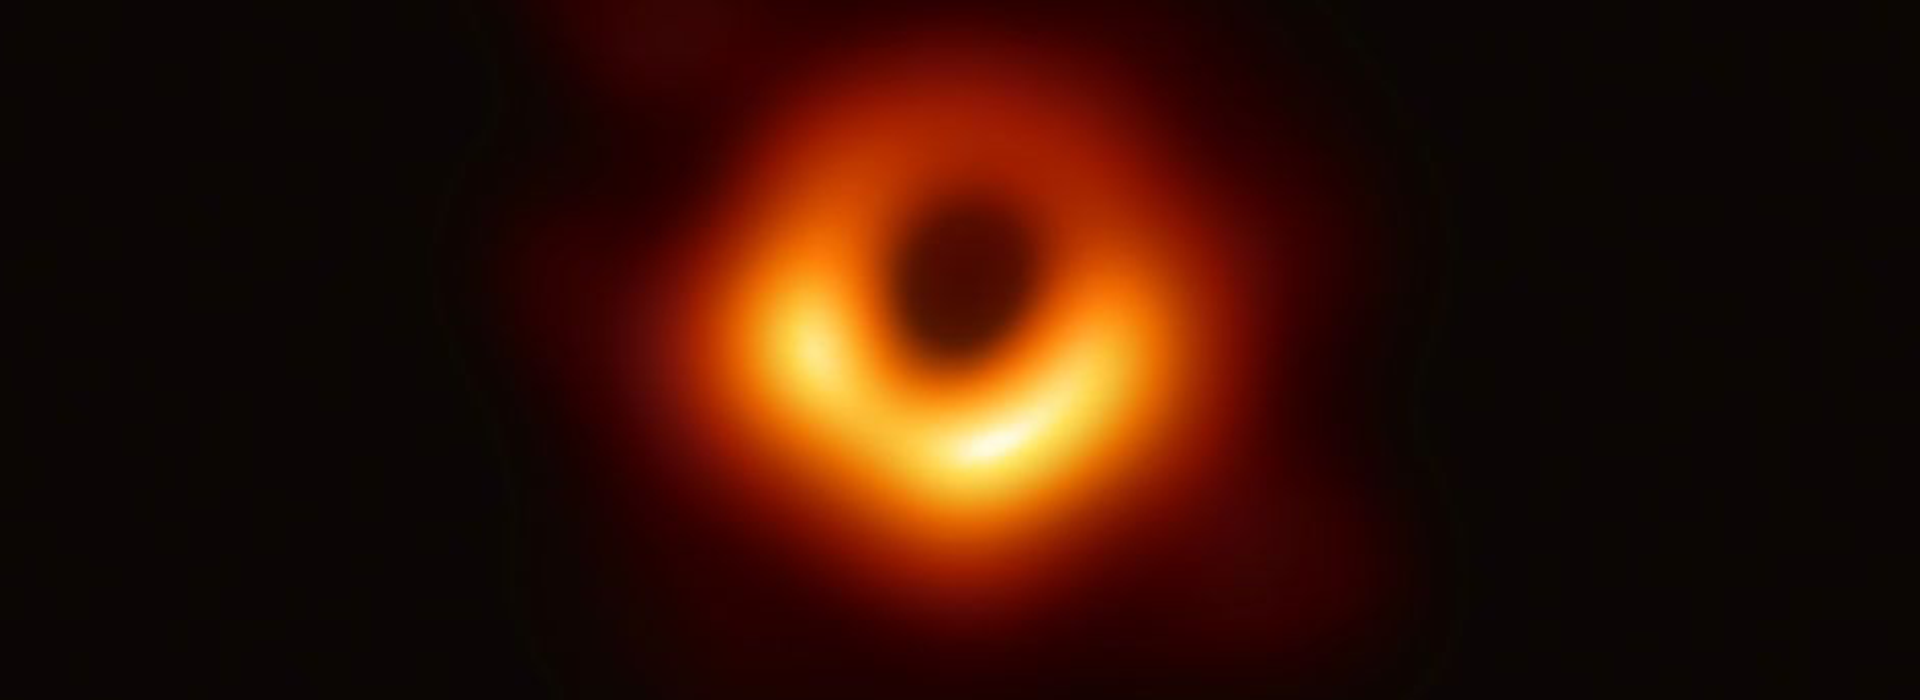 Black Hole Photo